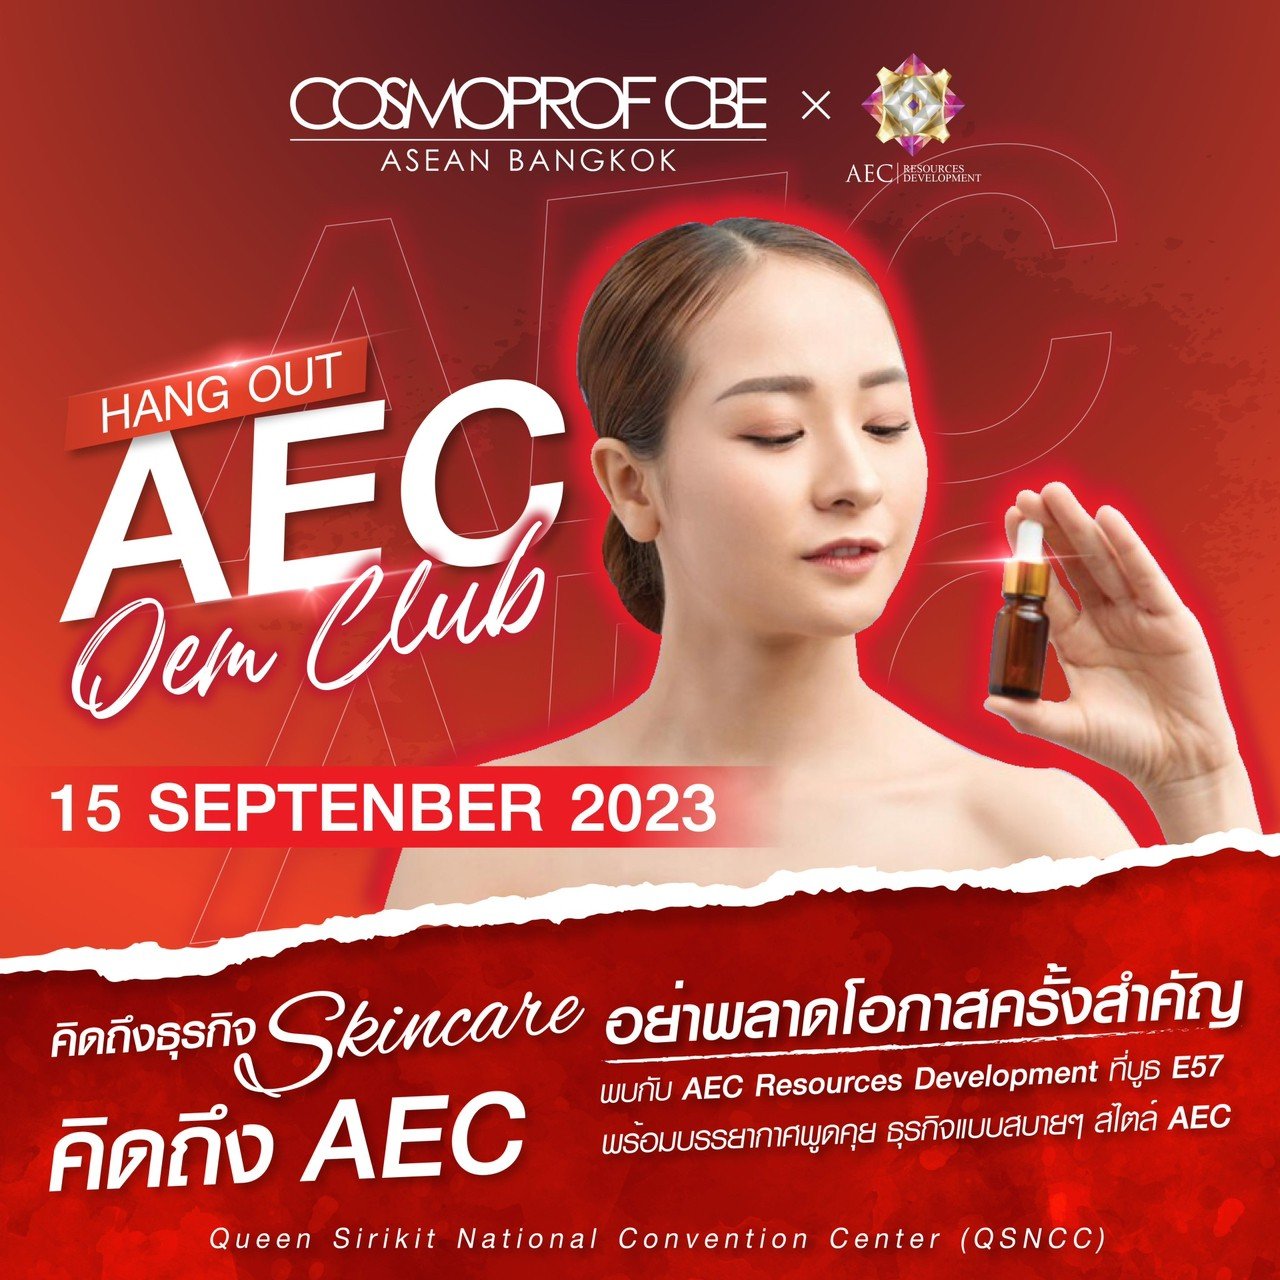 วันที่สองของงาน Cosmoprof CBE ASEAN 2023 ยังคึกคักเหมือนเดิม